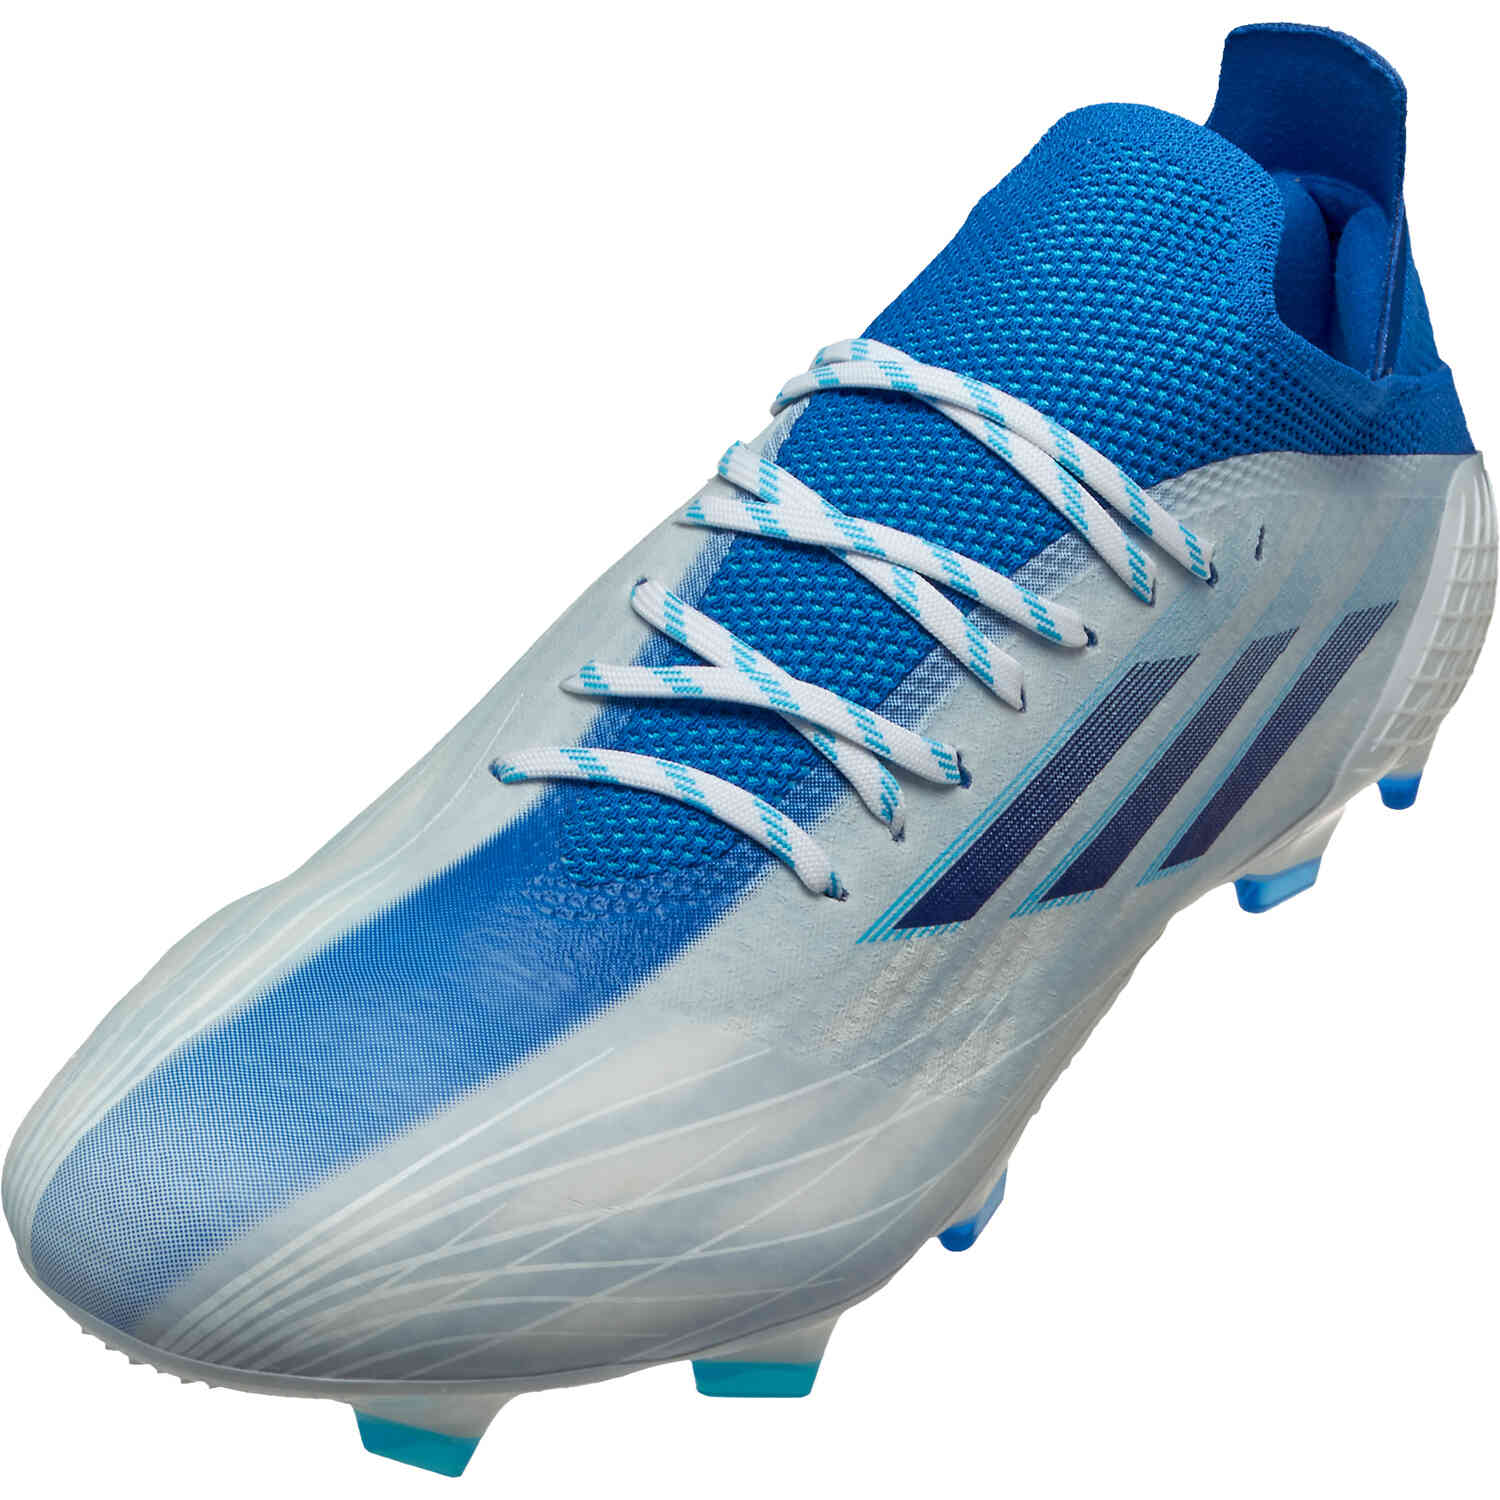 Adidas X AG Football Boots | lupon.gov.ph